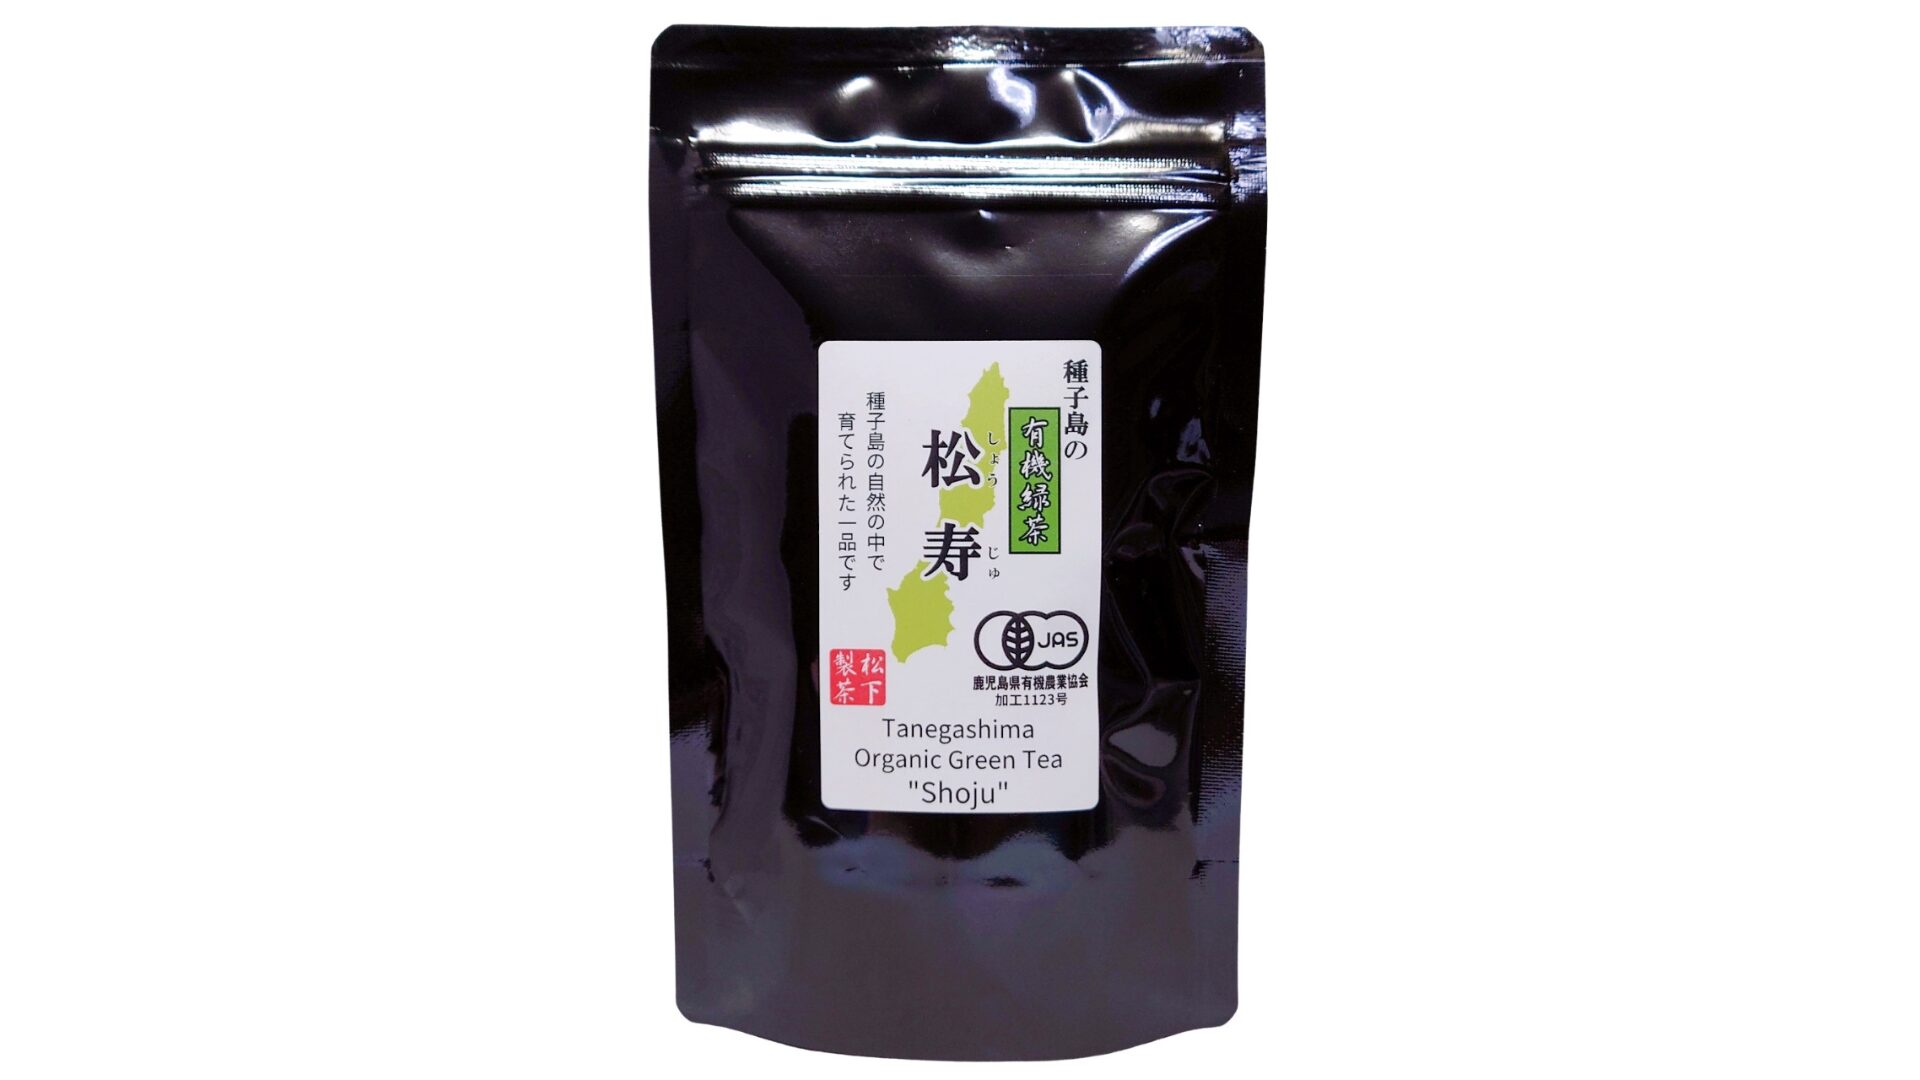 松下製茶 種子島の有機緑茶『松寿(しょうじゅ)』 茶葉(リーフ) 100g